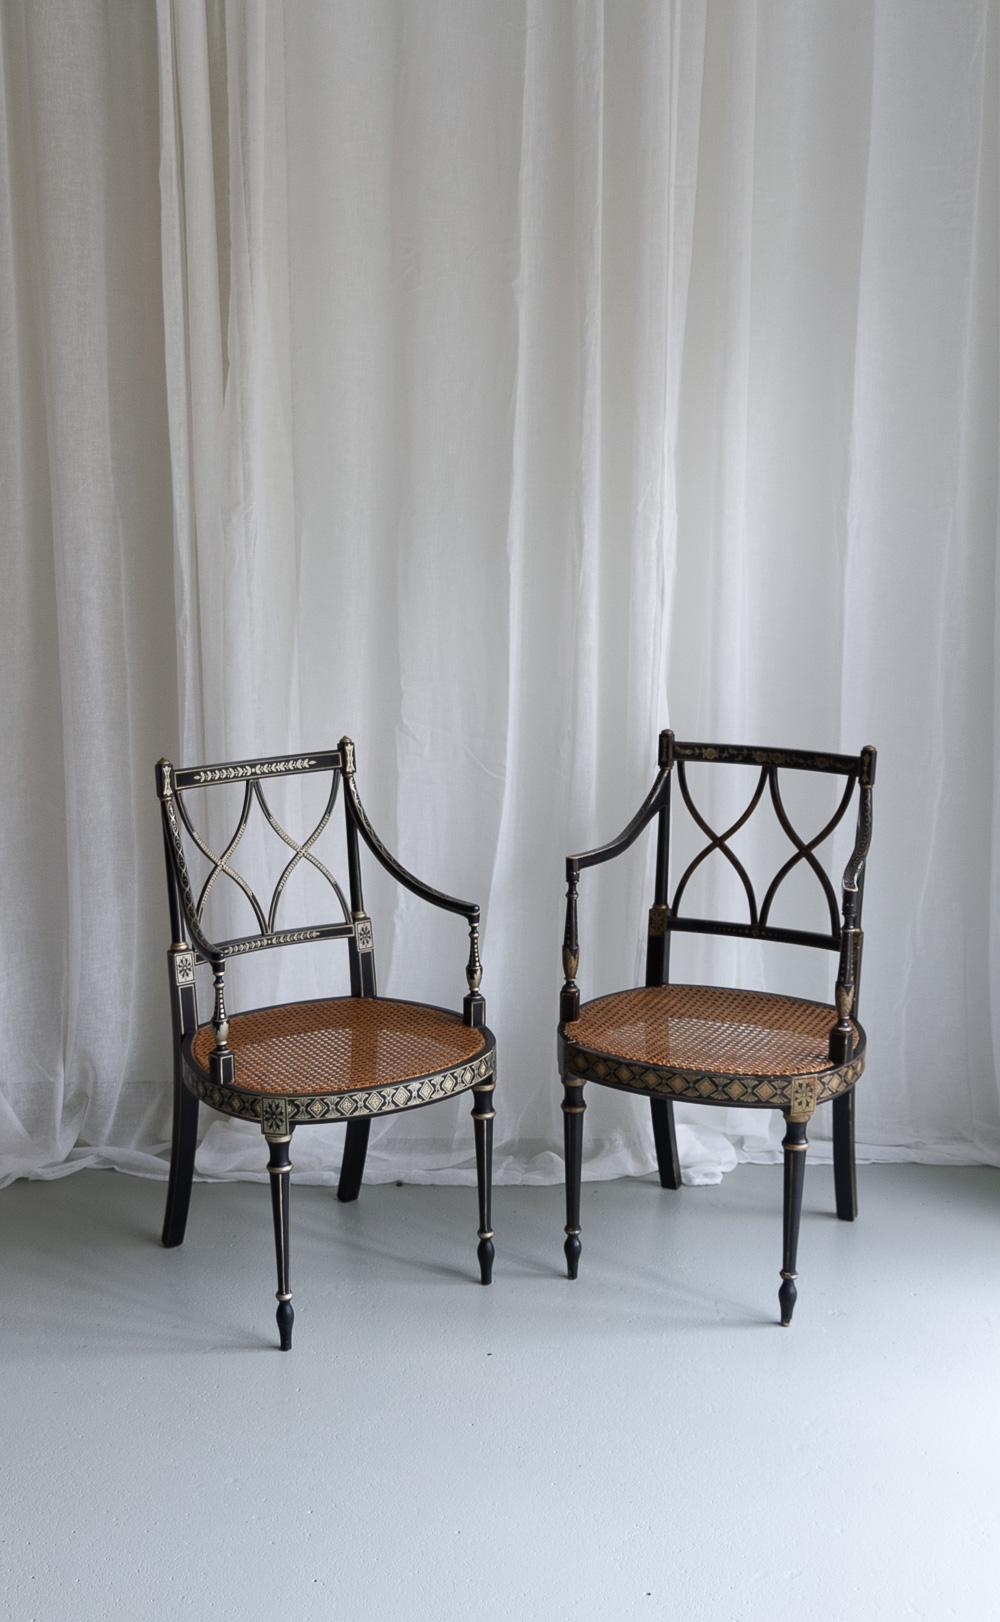 Fauteuils en rotin ébonisé de style Régence, ensemble de 2.
Paire de chaises de style Regency anglais laqué noir avec assise cannée et motifs dorés peints à la main vers les années 1970.
L'une des chaises est un peu plus patinée et son assise est